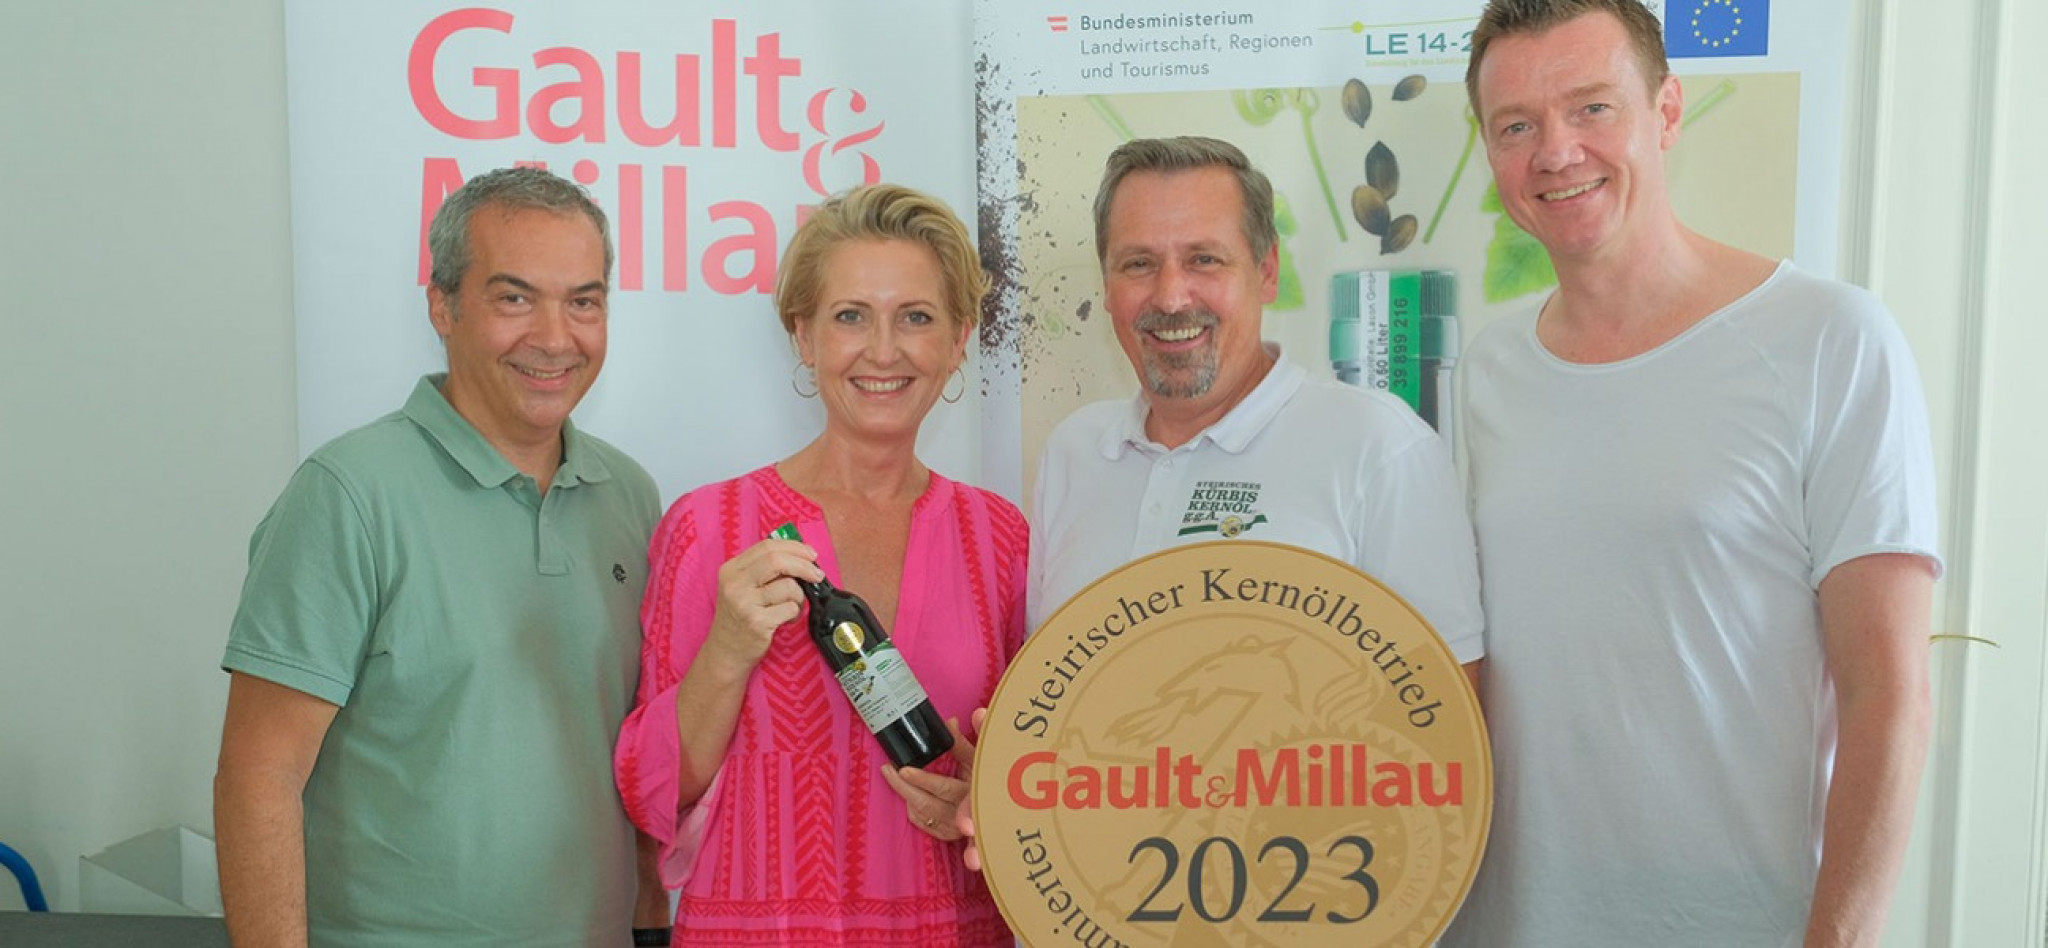 Robert Letz, Gault&Millau-Herausgeberin Martina Hohenlohe, Verkostungsleiter Reinhold Zötsch und Silvio Nickol (v. l. n. r.)